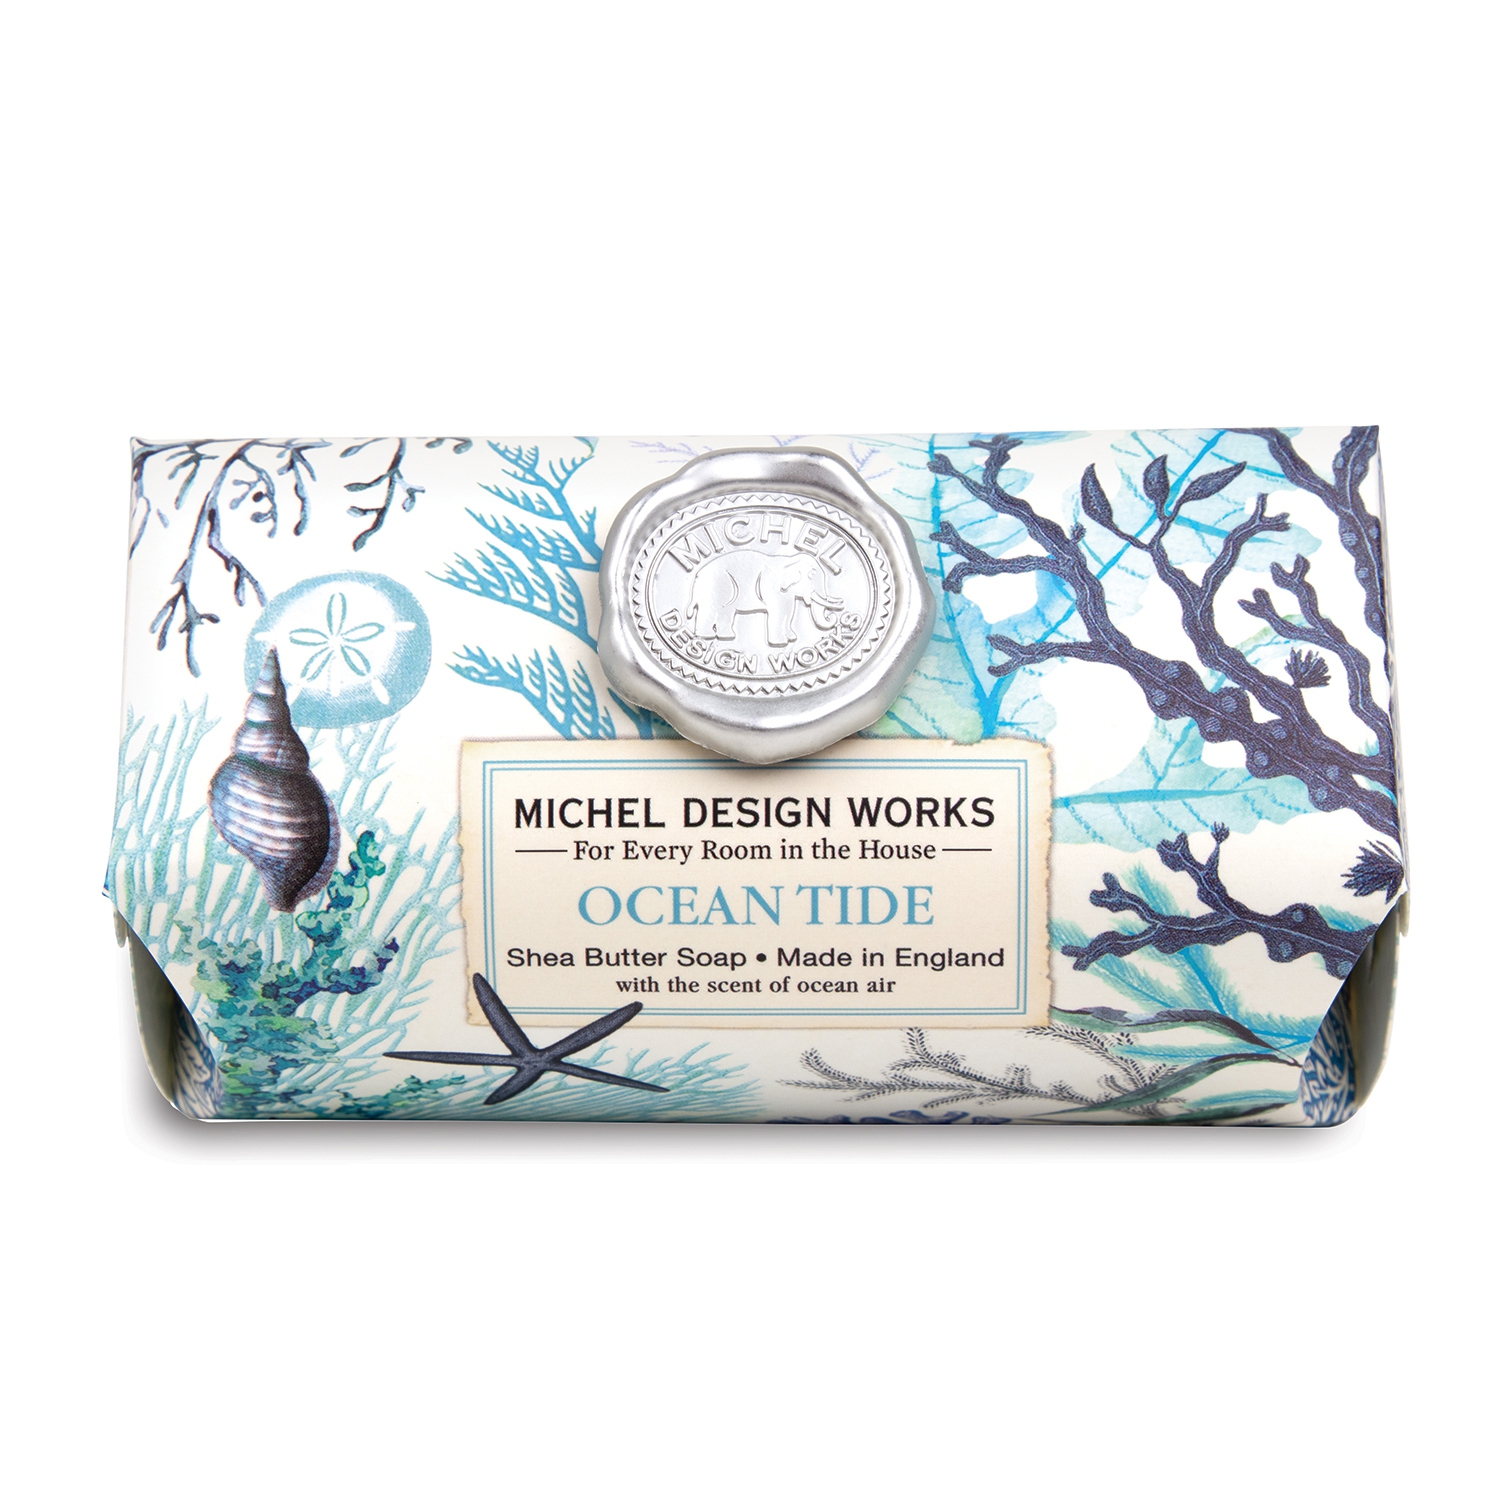 Ocean Tide Large Soap Bar 246g Michel Design